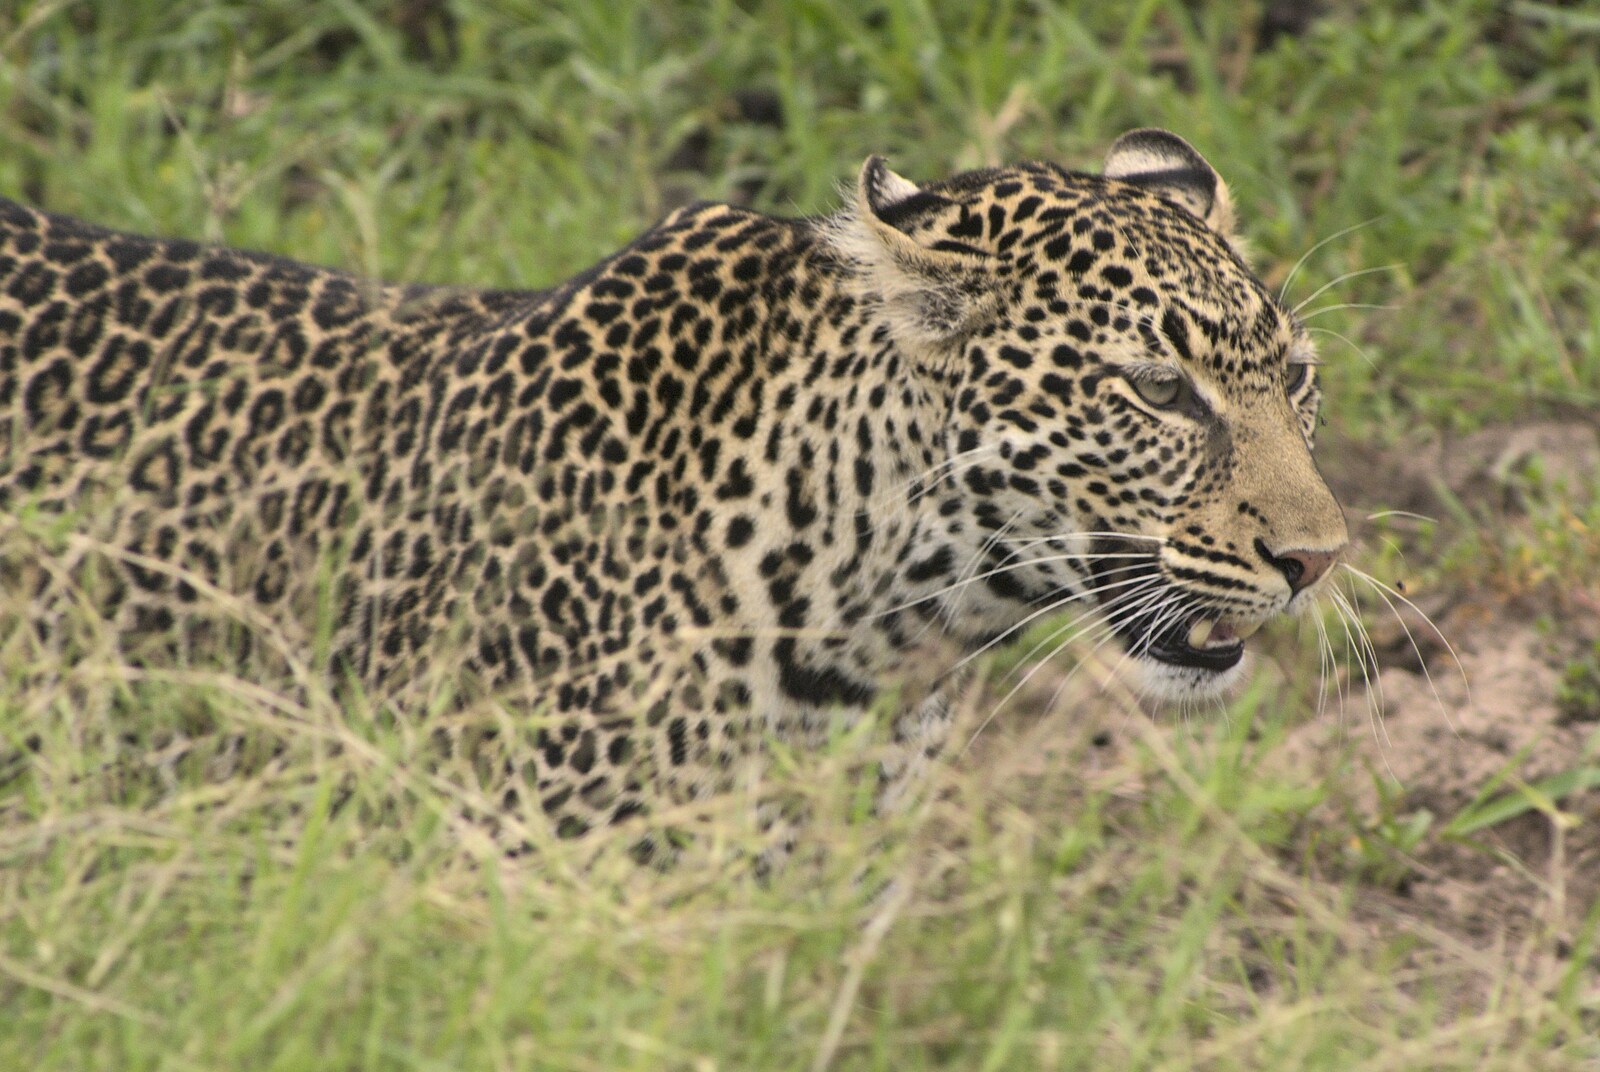 A leopard stalks some prey, about two metres away from Maasai Mara Safari and a Maasai Village, Ololaimutia, Kenya - 5th November 2010